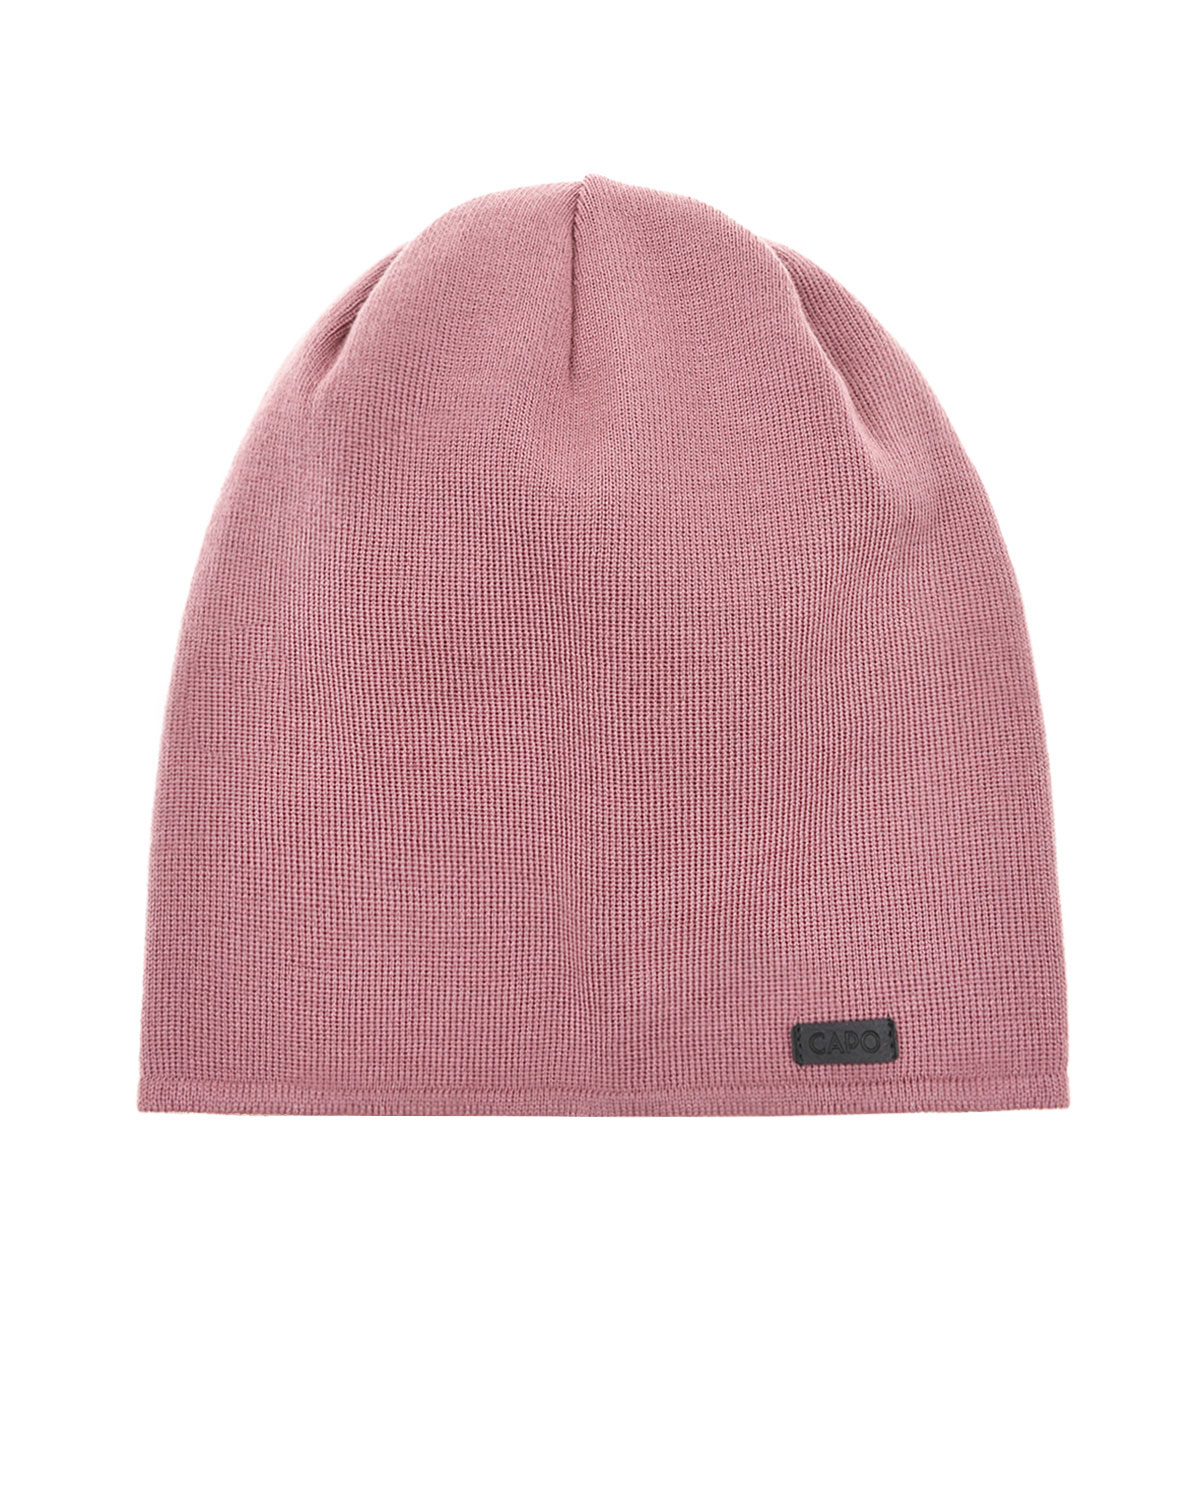 Шерстяная шапка с нашивкой CAPO, размер unica, цвет розовый - фото 1